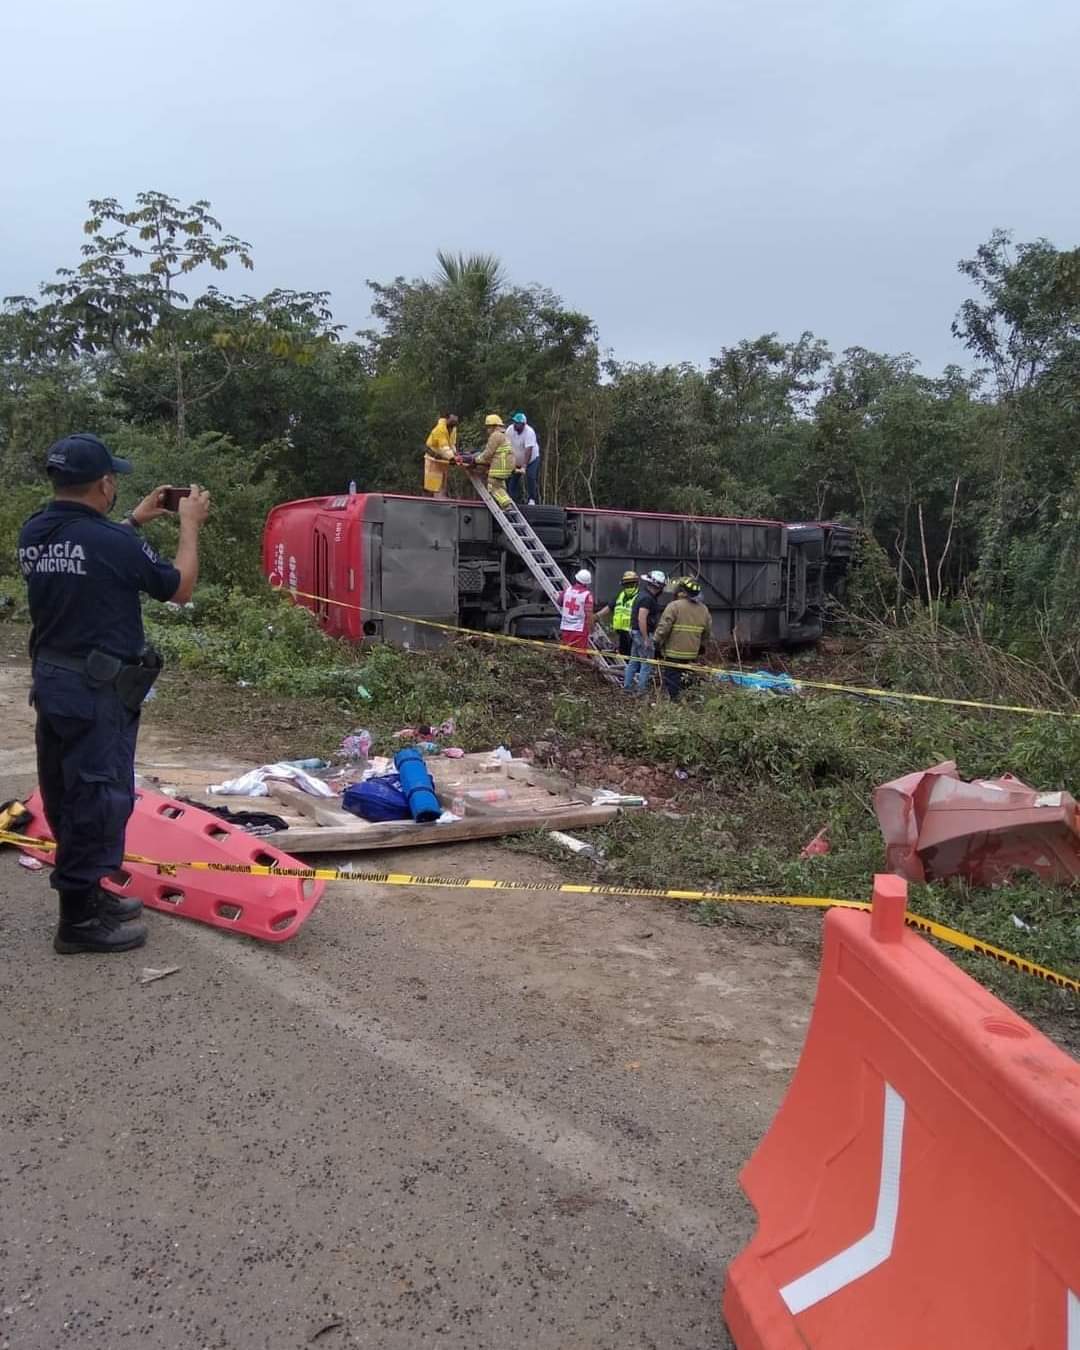 Vuelca camión ADO en la carretera Cancún Mérida, al menos 6 muertos y varios heridos